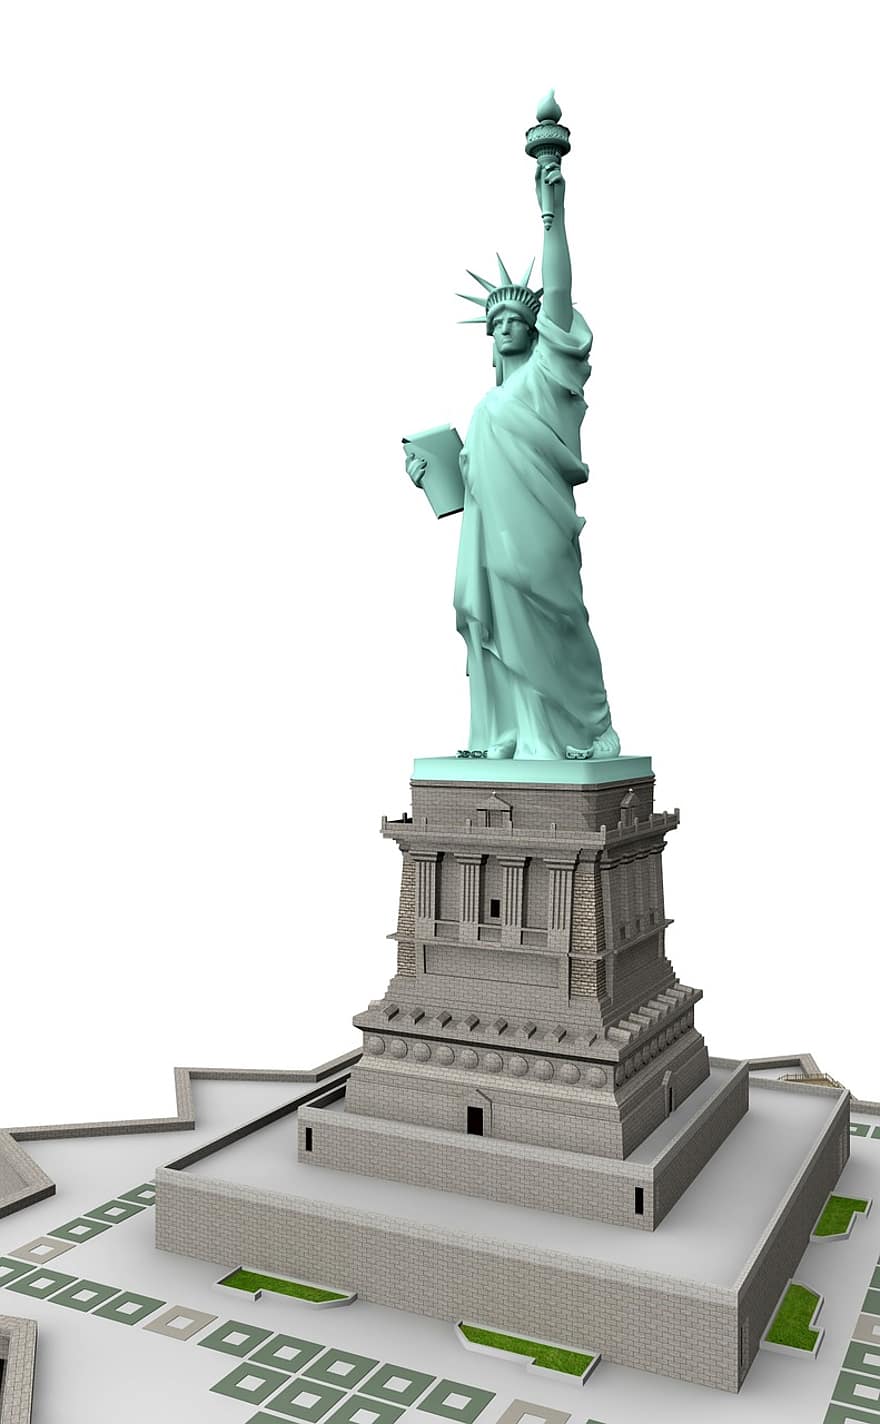 dom, άγαλμα, Νέα Υόρκη, το ουζμπεκιστάν, Κτίριο, σημεία ενδιαφέροντος, ιστορικά, τουρίστες, αξιοθεατο, ορόσημο, πρόσοψη